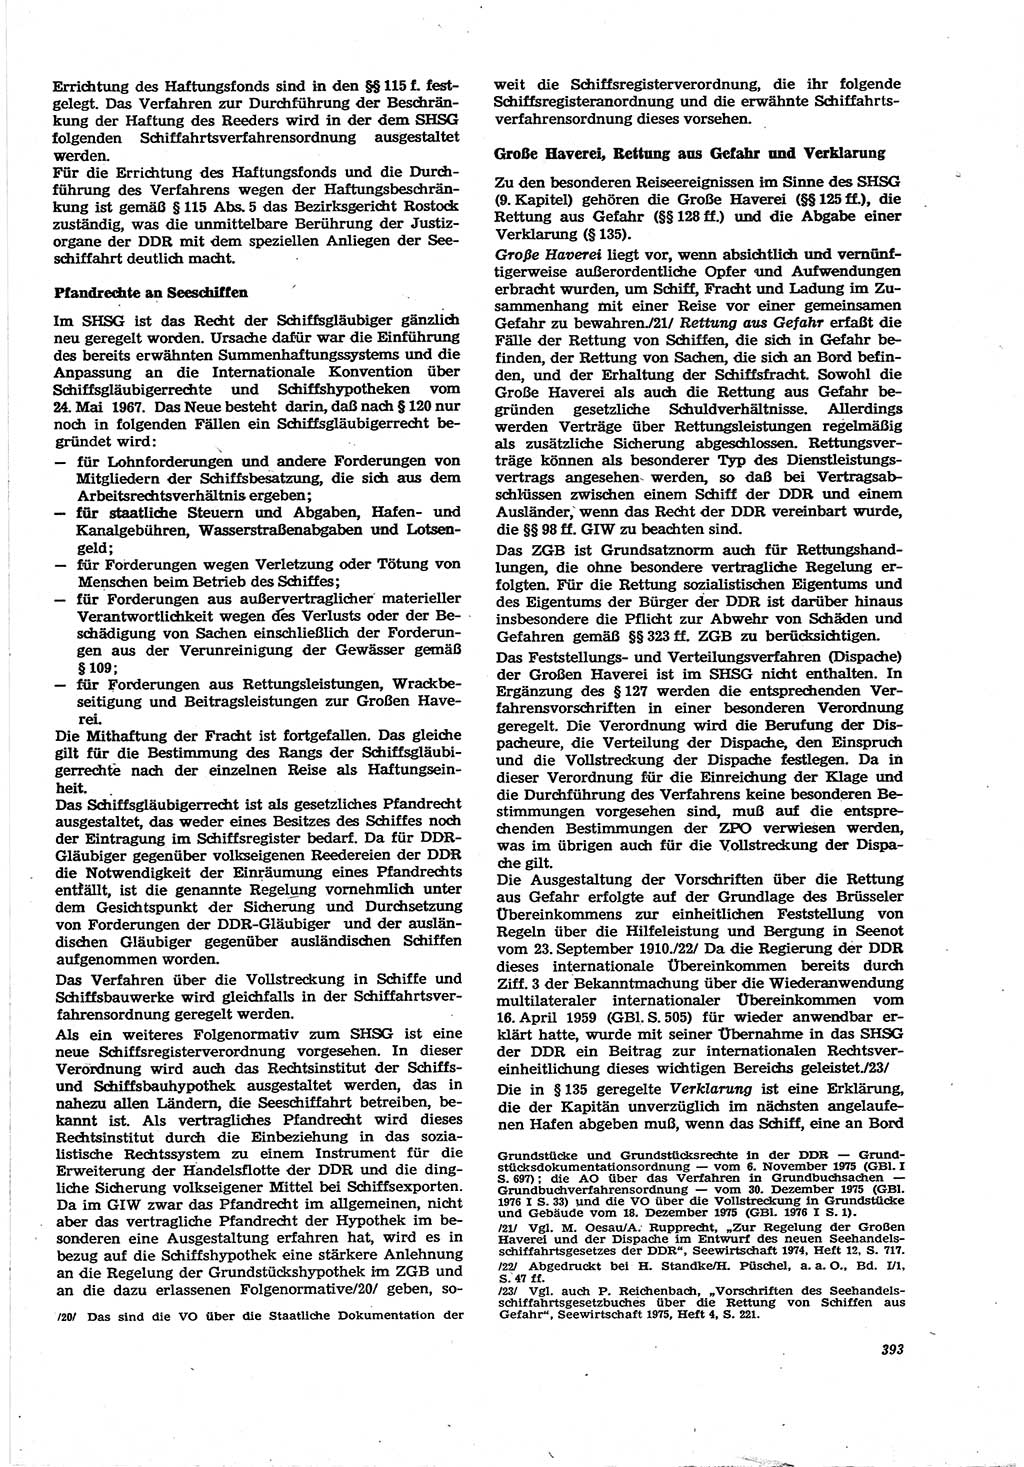 Neue Justiz (NJ), Zeitschrift für Recht und Rechtswissenschaft [Deutsche Demokratische Republik (DDR)], 30. Jahrgang 1976, Seite 393 (NJ DDR 1976, S. 393)